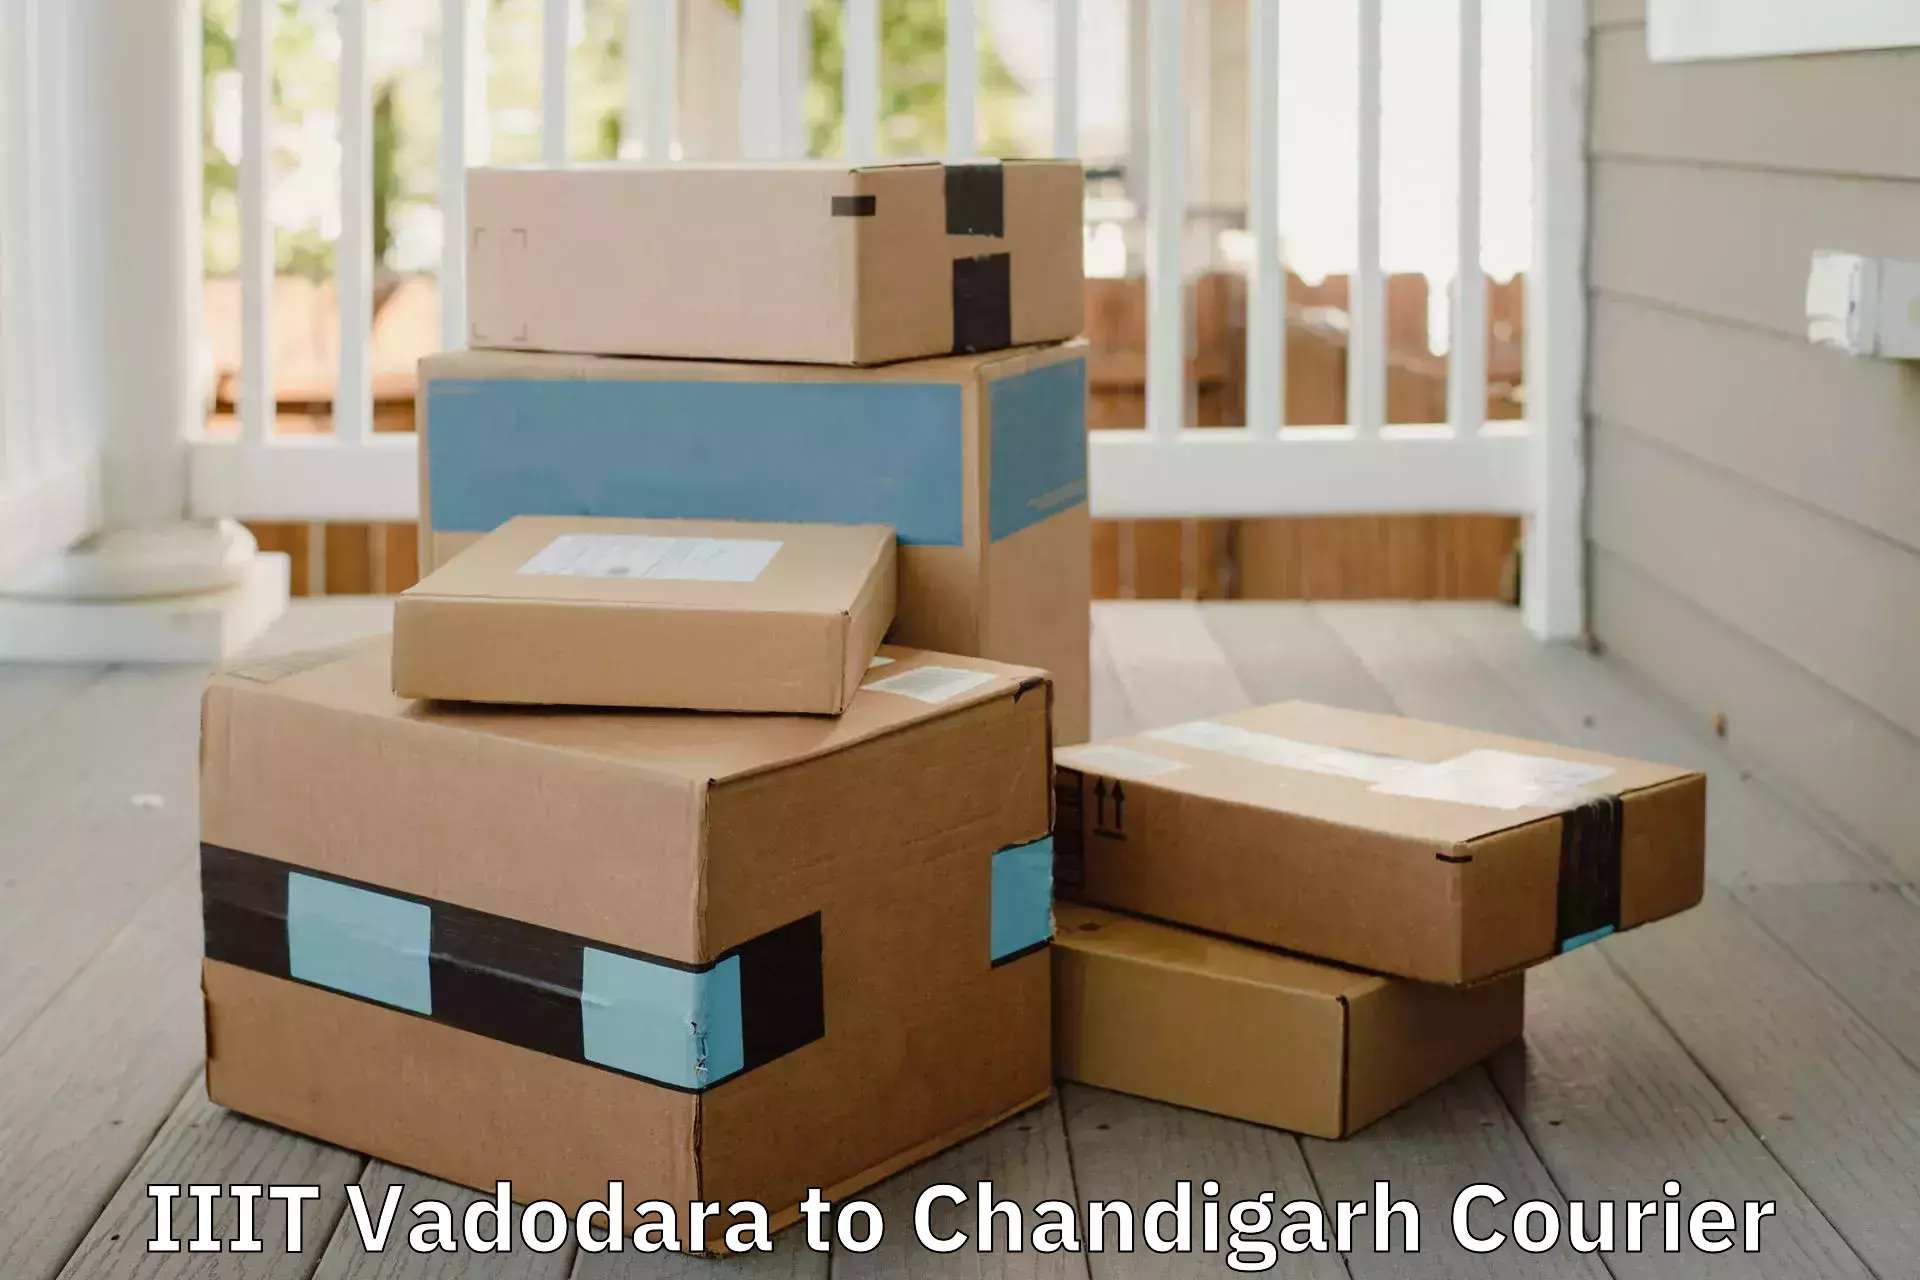 Trusted household movers IIIT Vadodara to Chandigarh